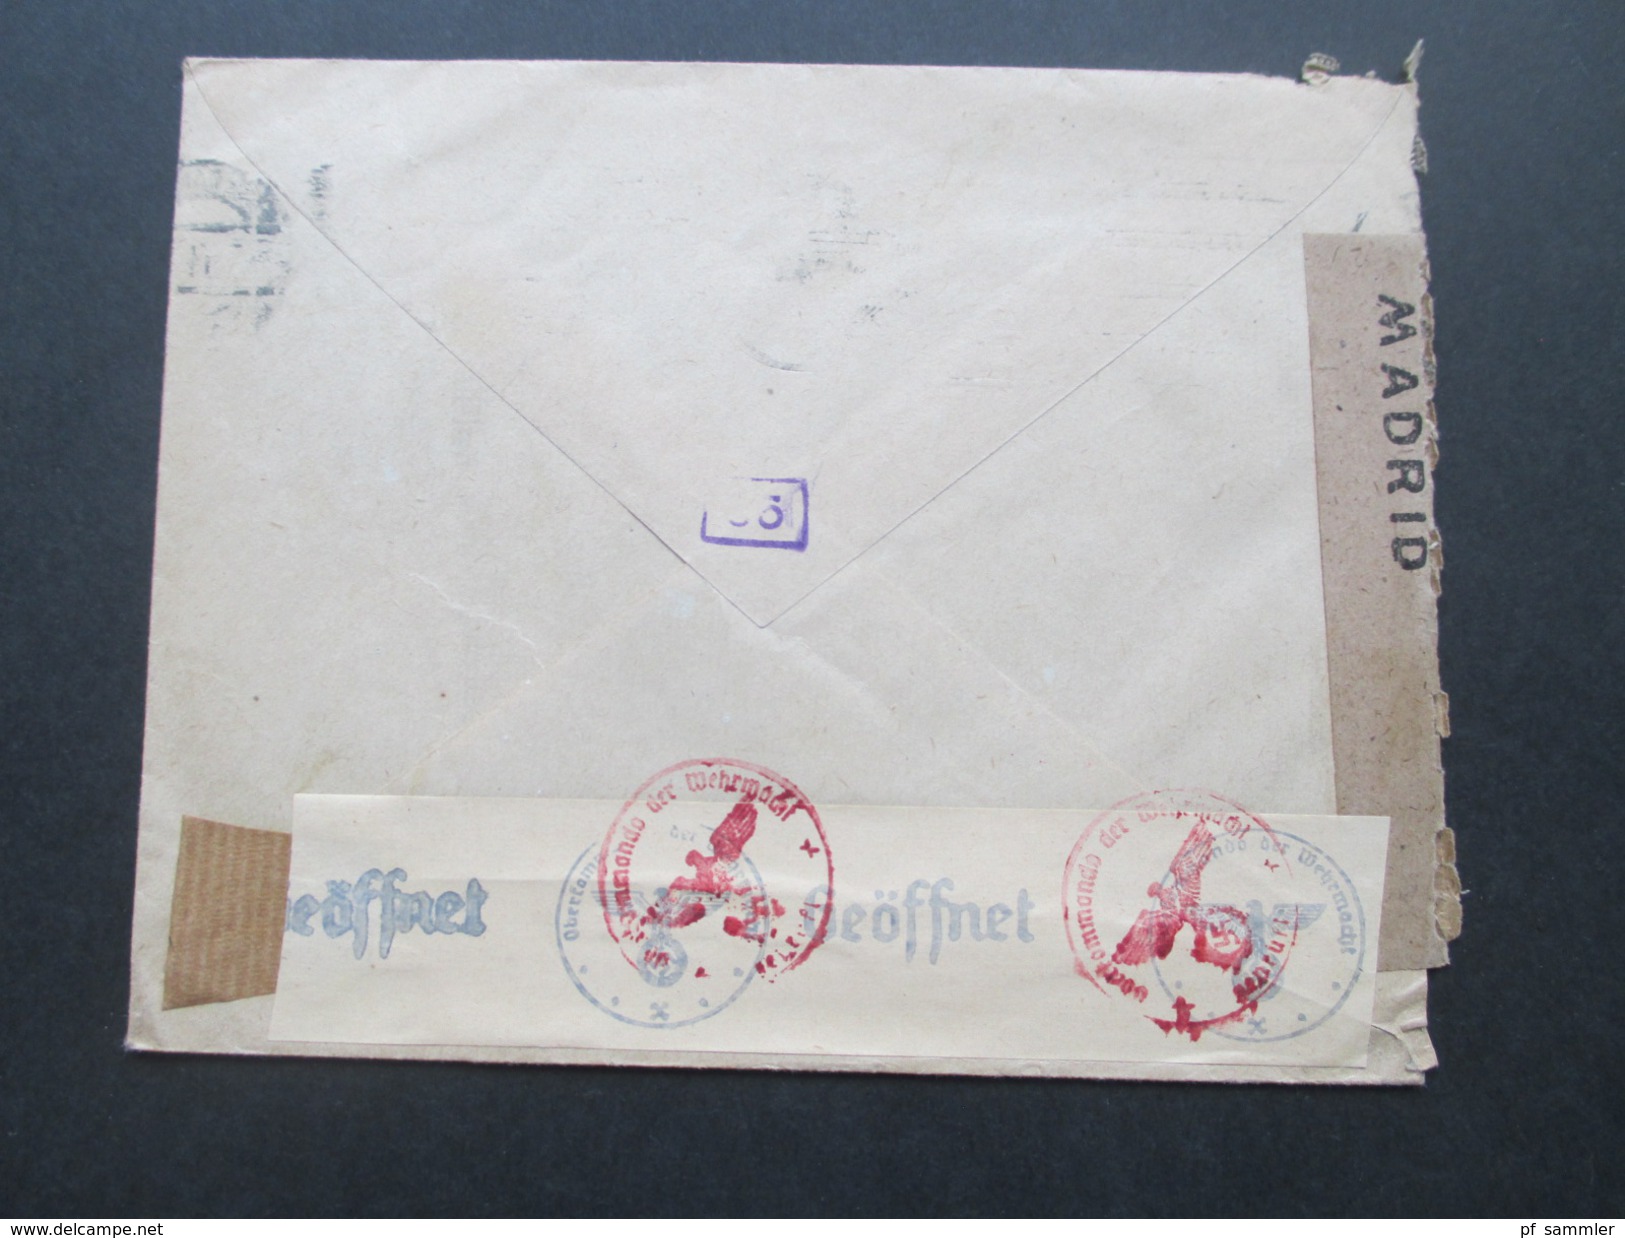 Spanien - Schweiz 1943 Zensur Der Wehrmacht. Zensurbeleg. Geöffnet / Geprüft. Franco. Censura Gubernativa Madrid.Airmail - Lettres & Documents